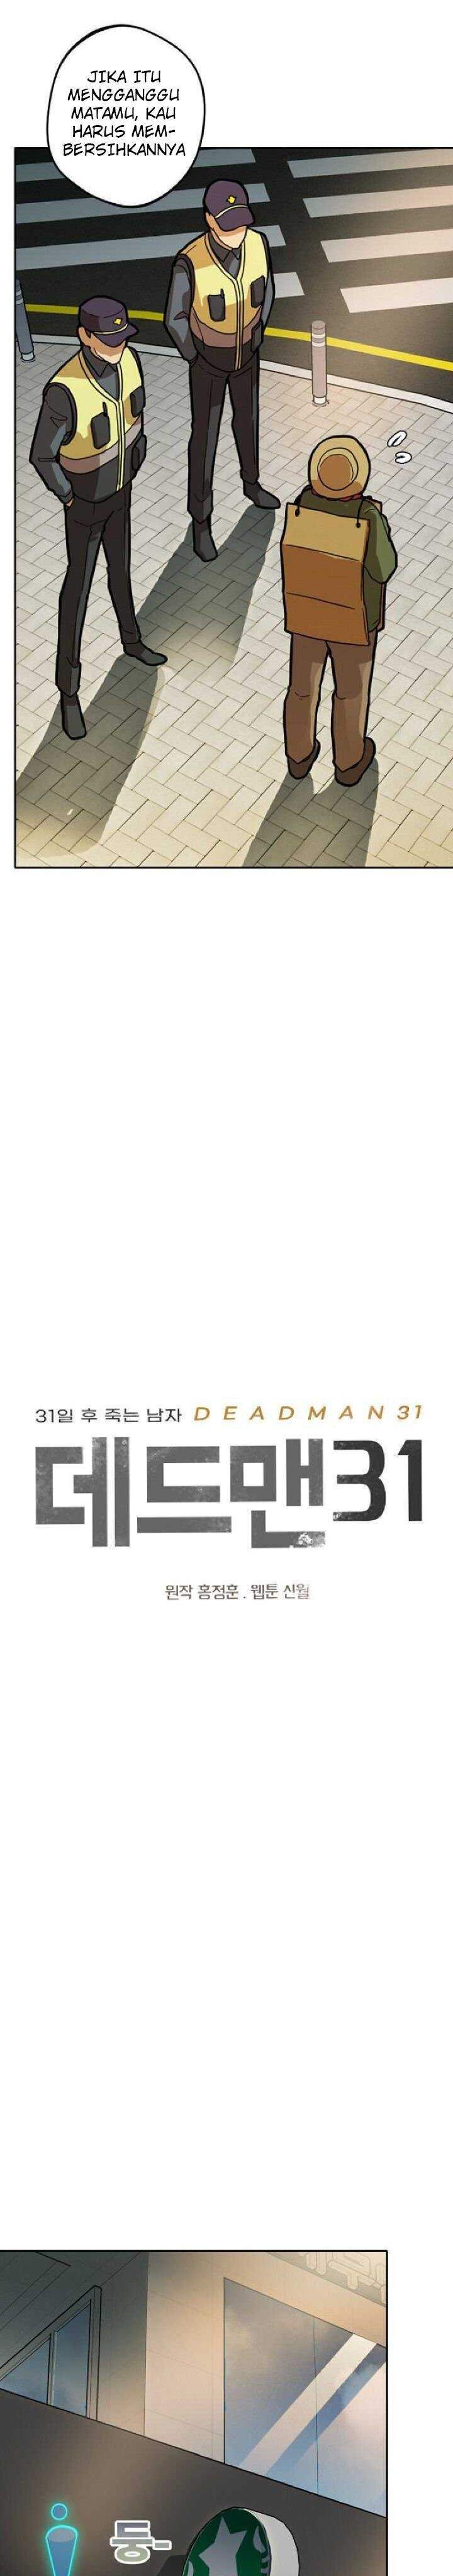 Deadman 31 Chapter 2